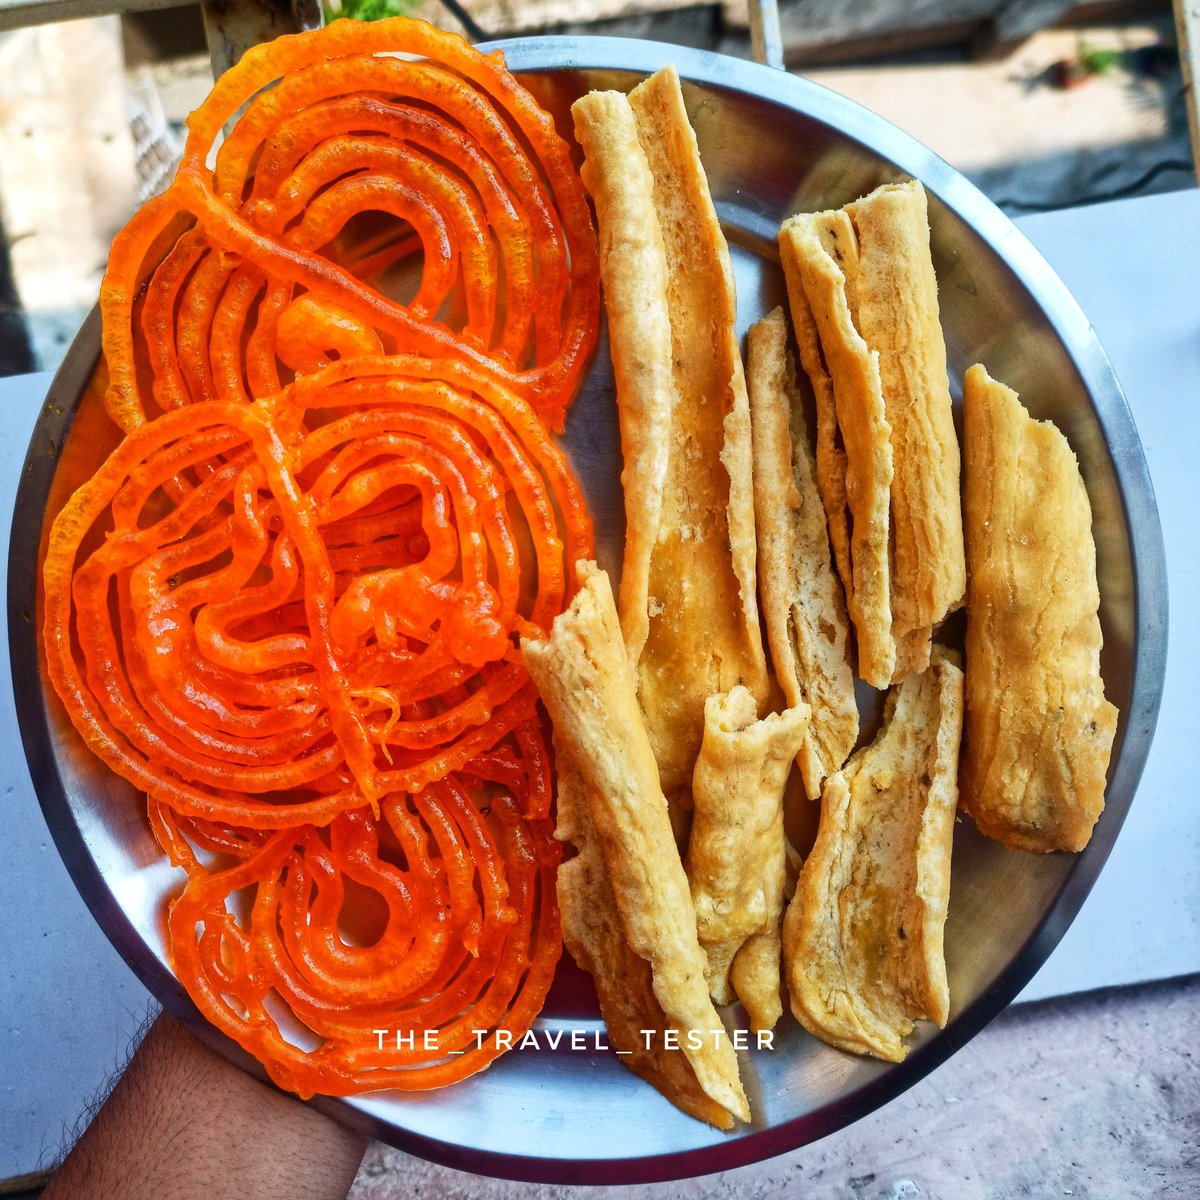 Sunday start with the best Combo❤️
Jalebi Fafda
#the_travel_tester
#jalebi #jalebifafda #sweettooth #sundaybrunch #sundaybrunch #kerela #bangalorestreetfood #kolkatablogger #kolkatastreets #calcuttadiaries #kolkata #f52gram #tastyfood #desikhana  #sweets #indiansweets #morning